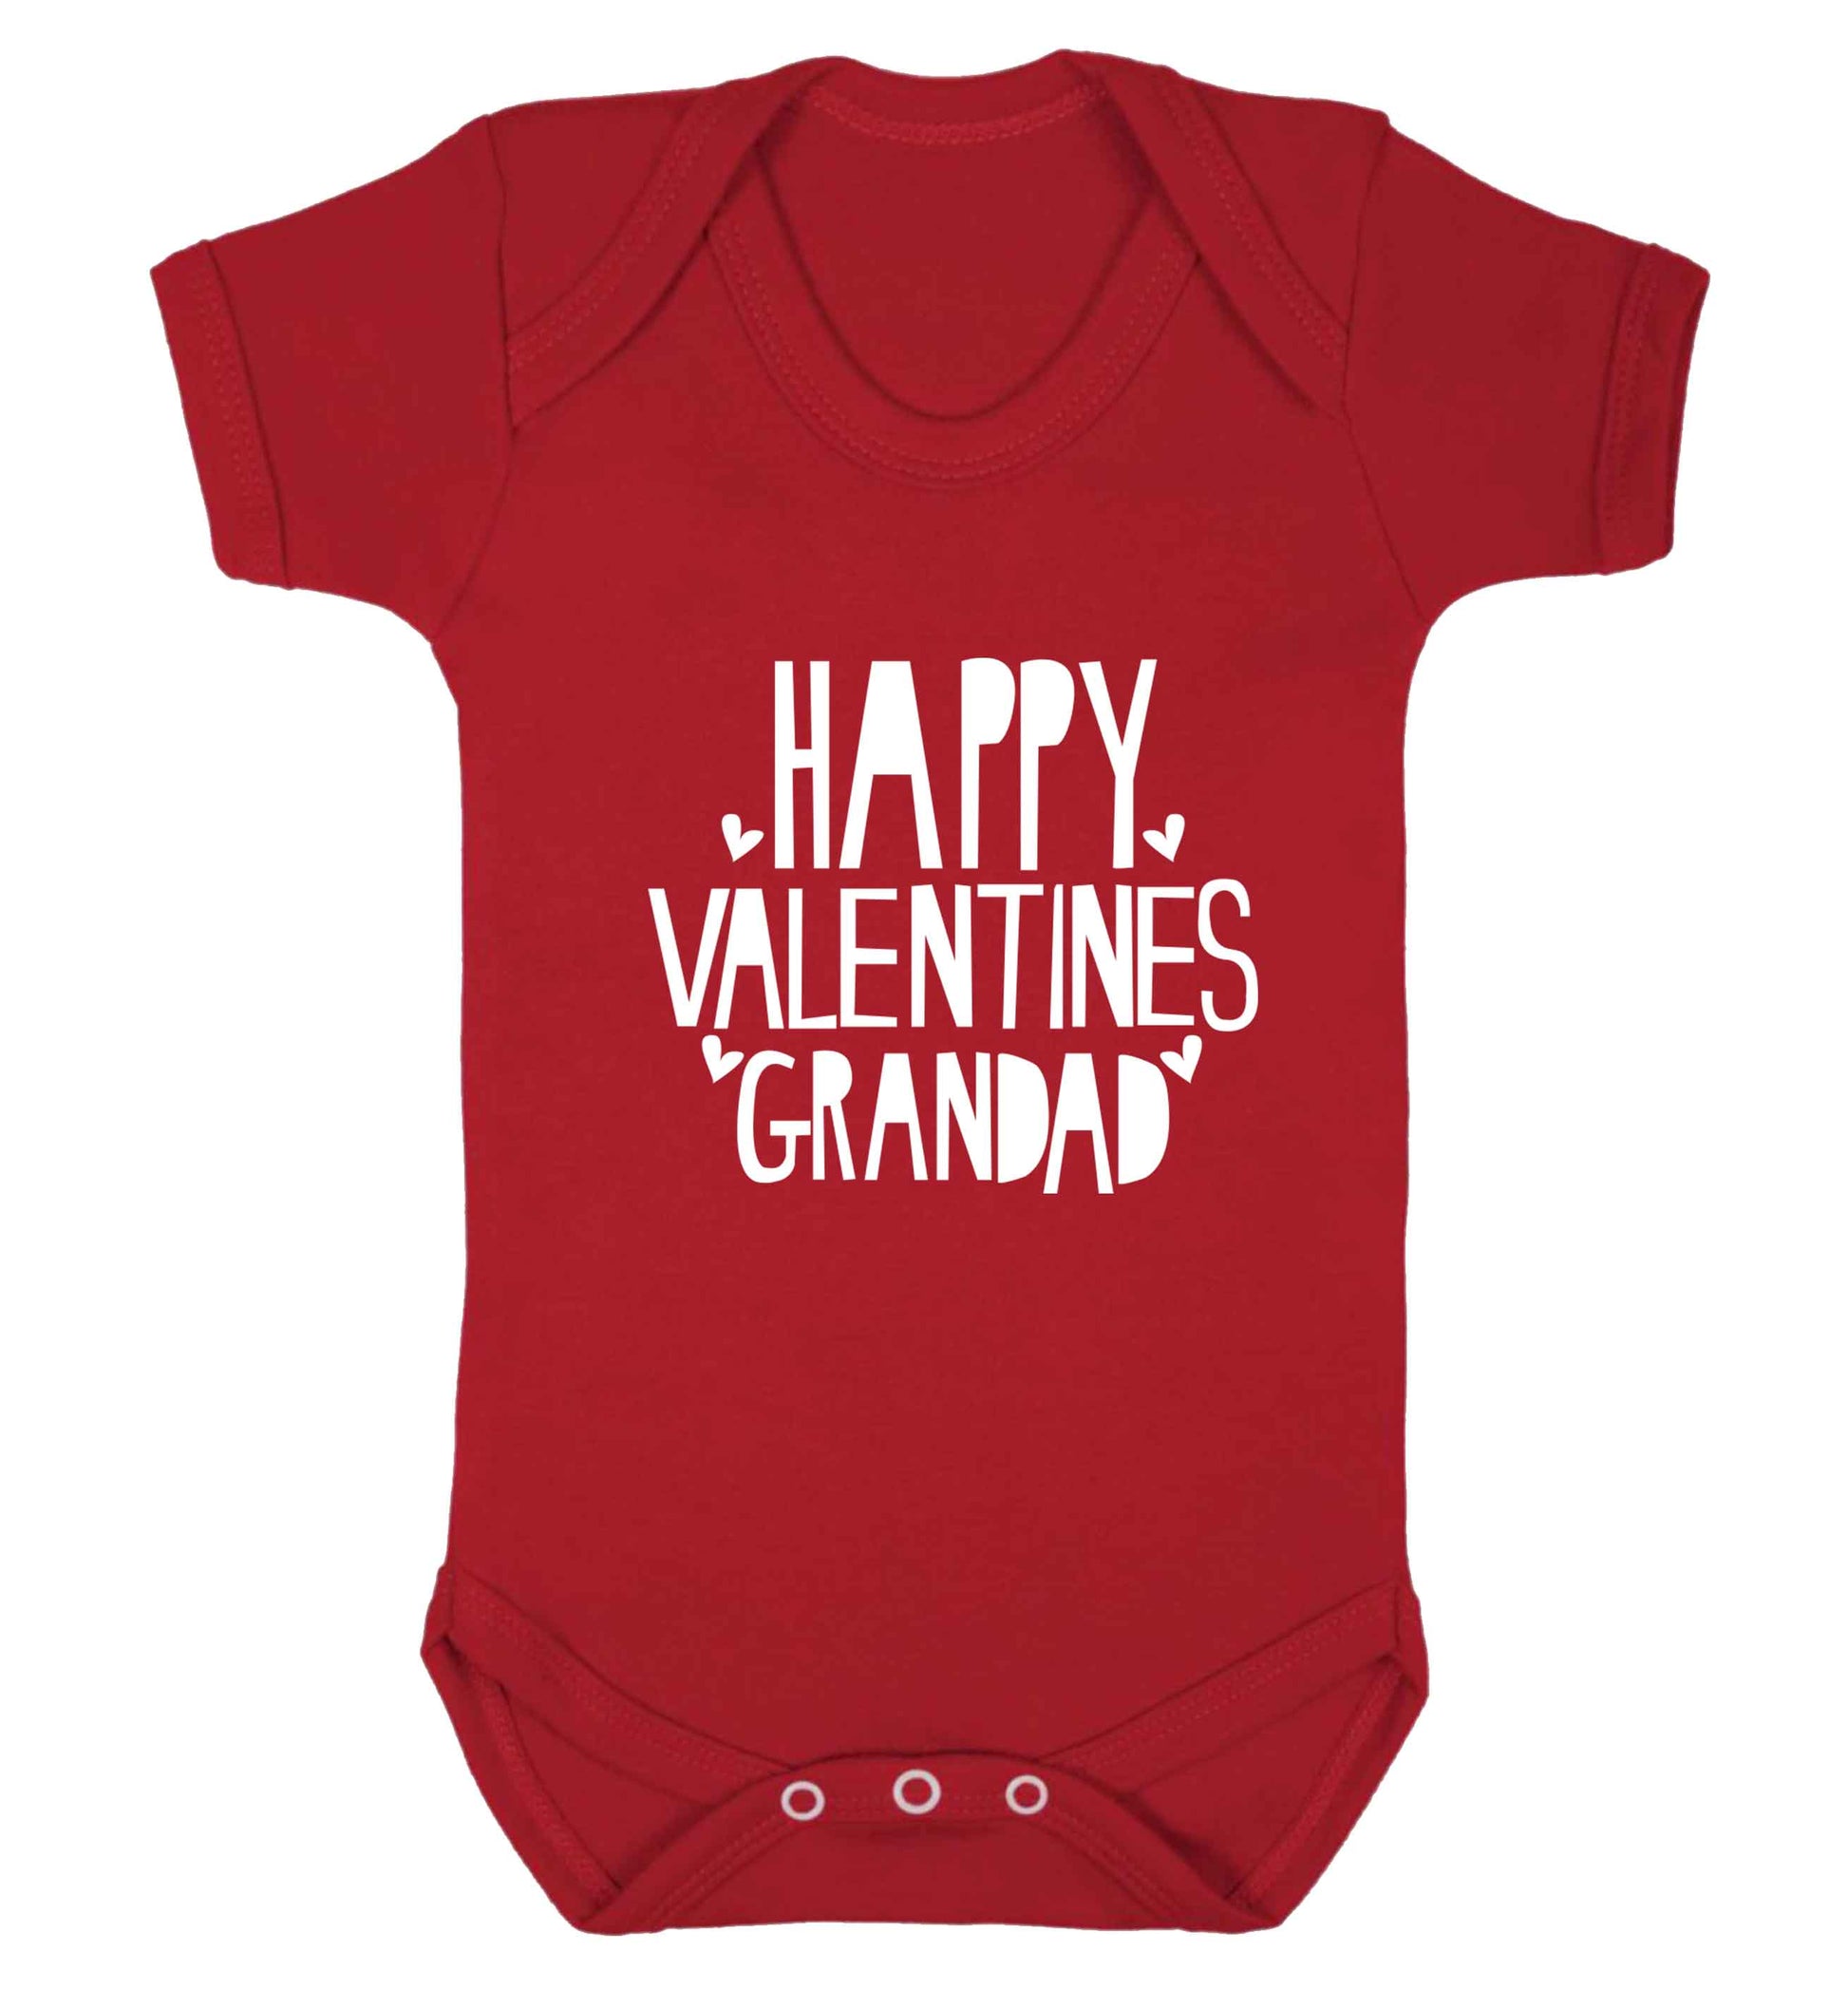 Happy valentines grandad baby vest red 18-24 months